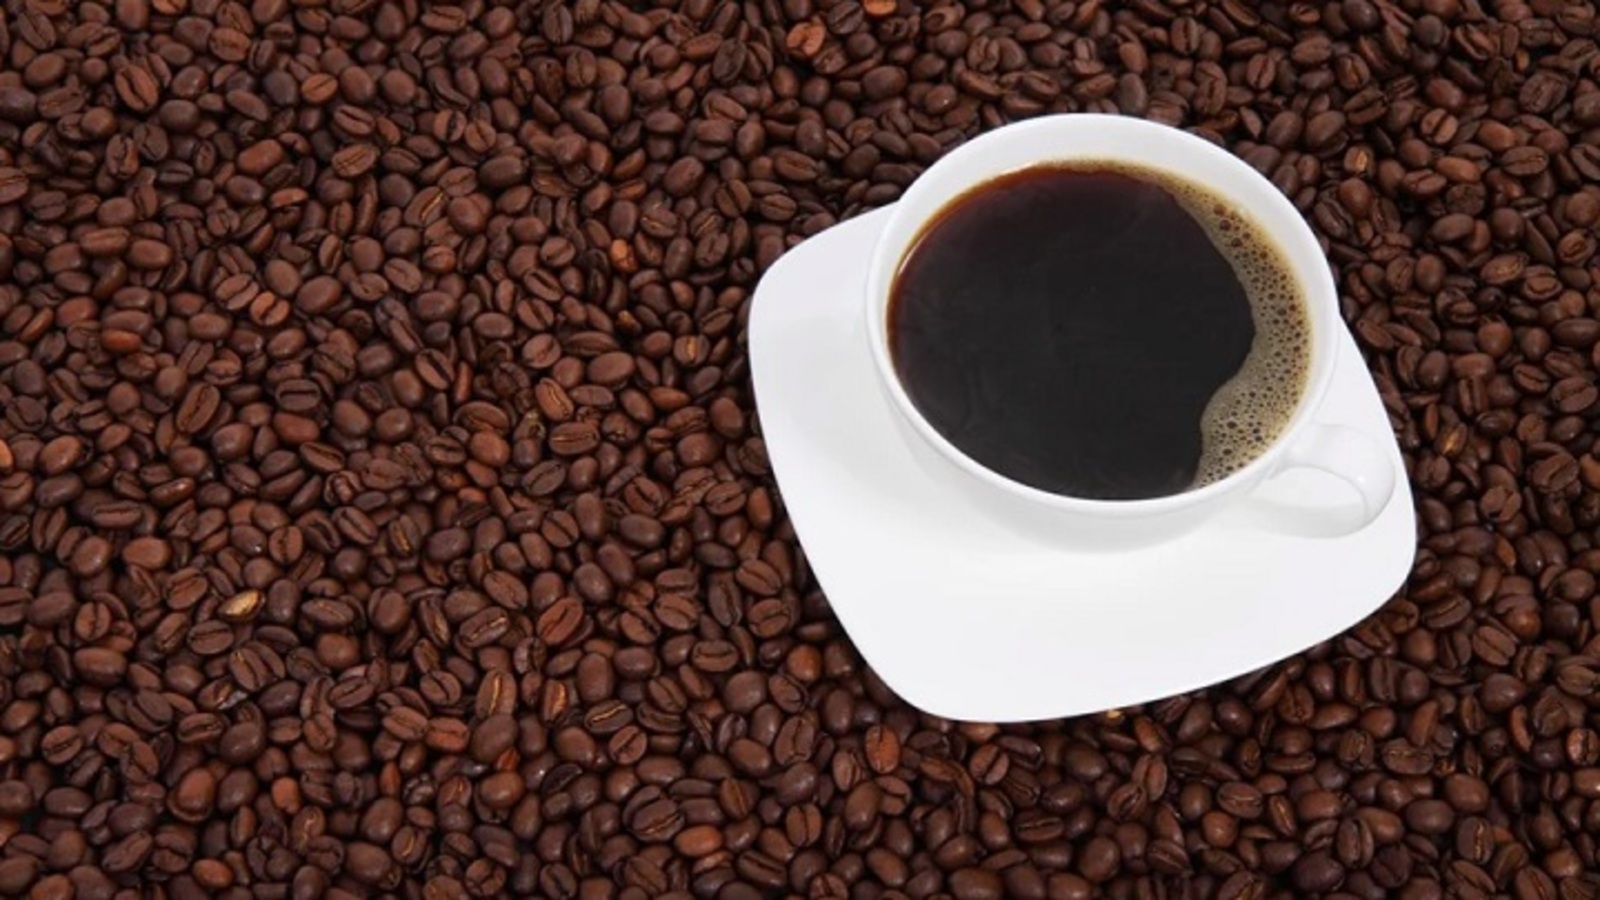 Остывший кофе вреден для здоровья, сообщил эксперт